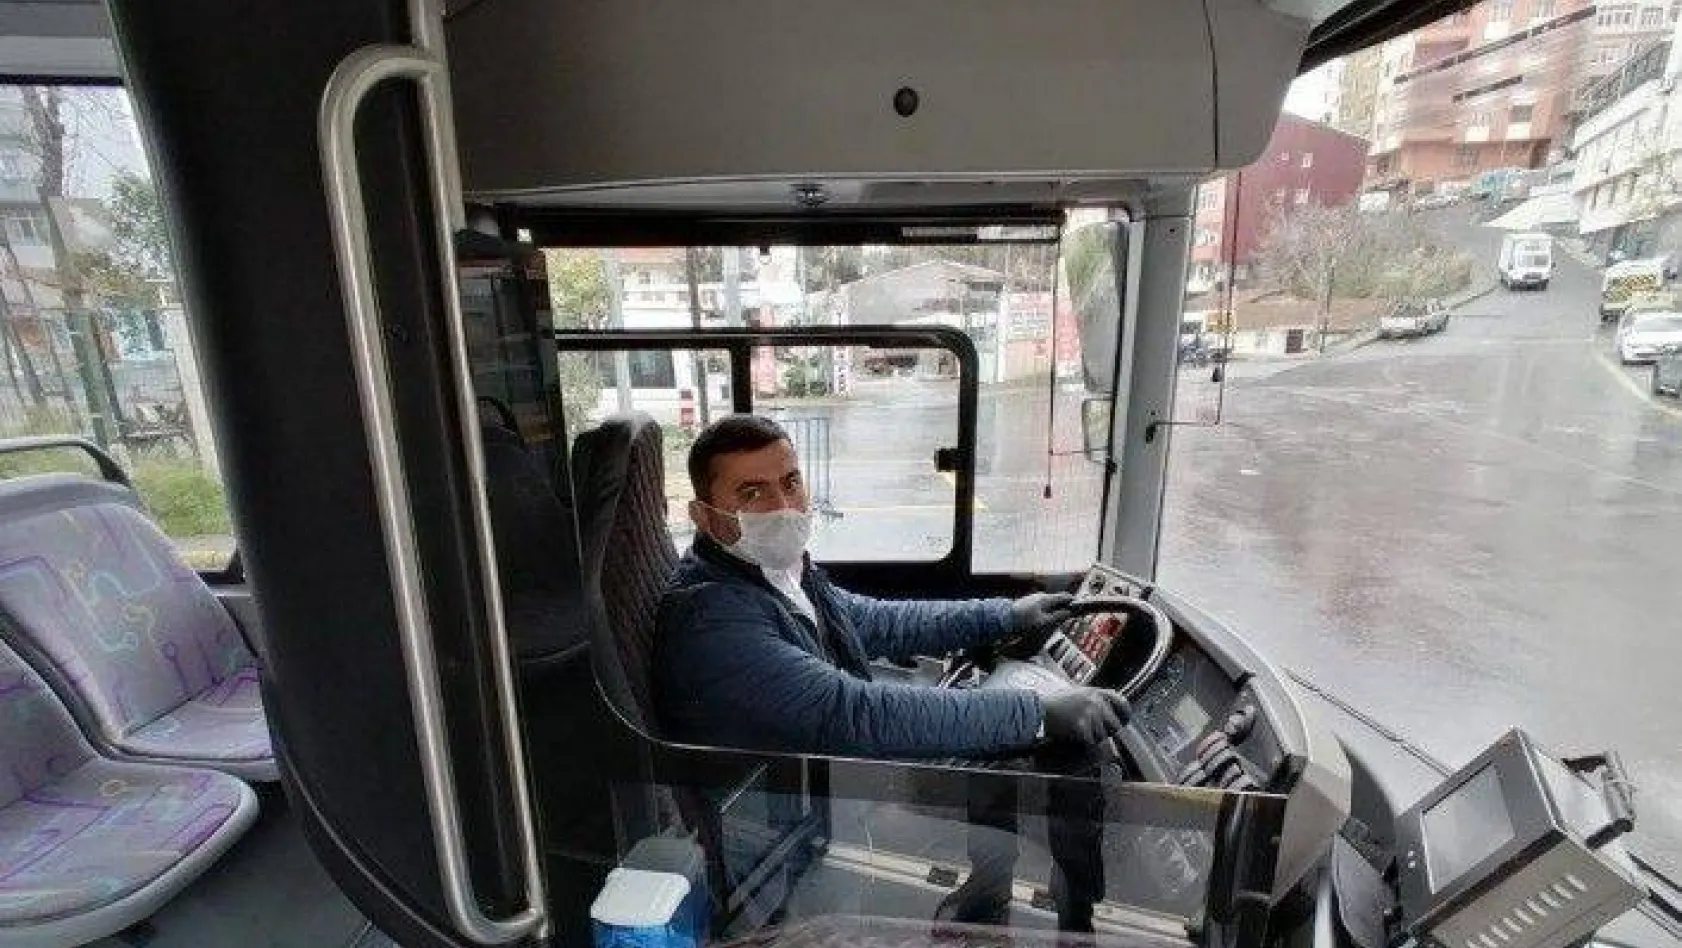 (Özel) Halk otobüsü şoföründen korona virüs mücadelesinde örnek davranış